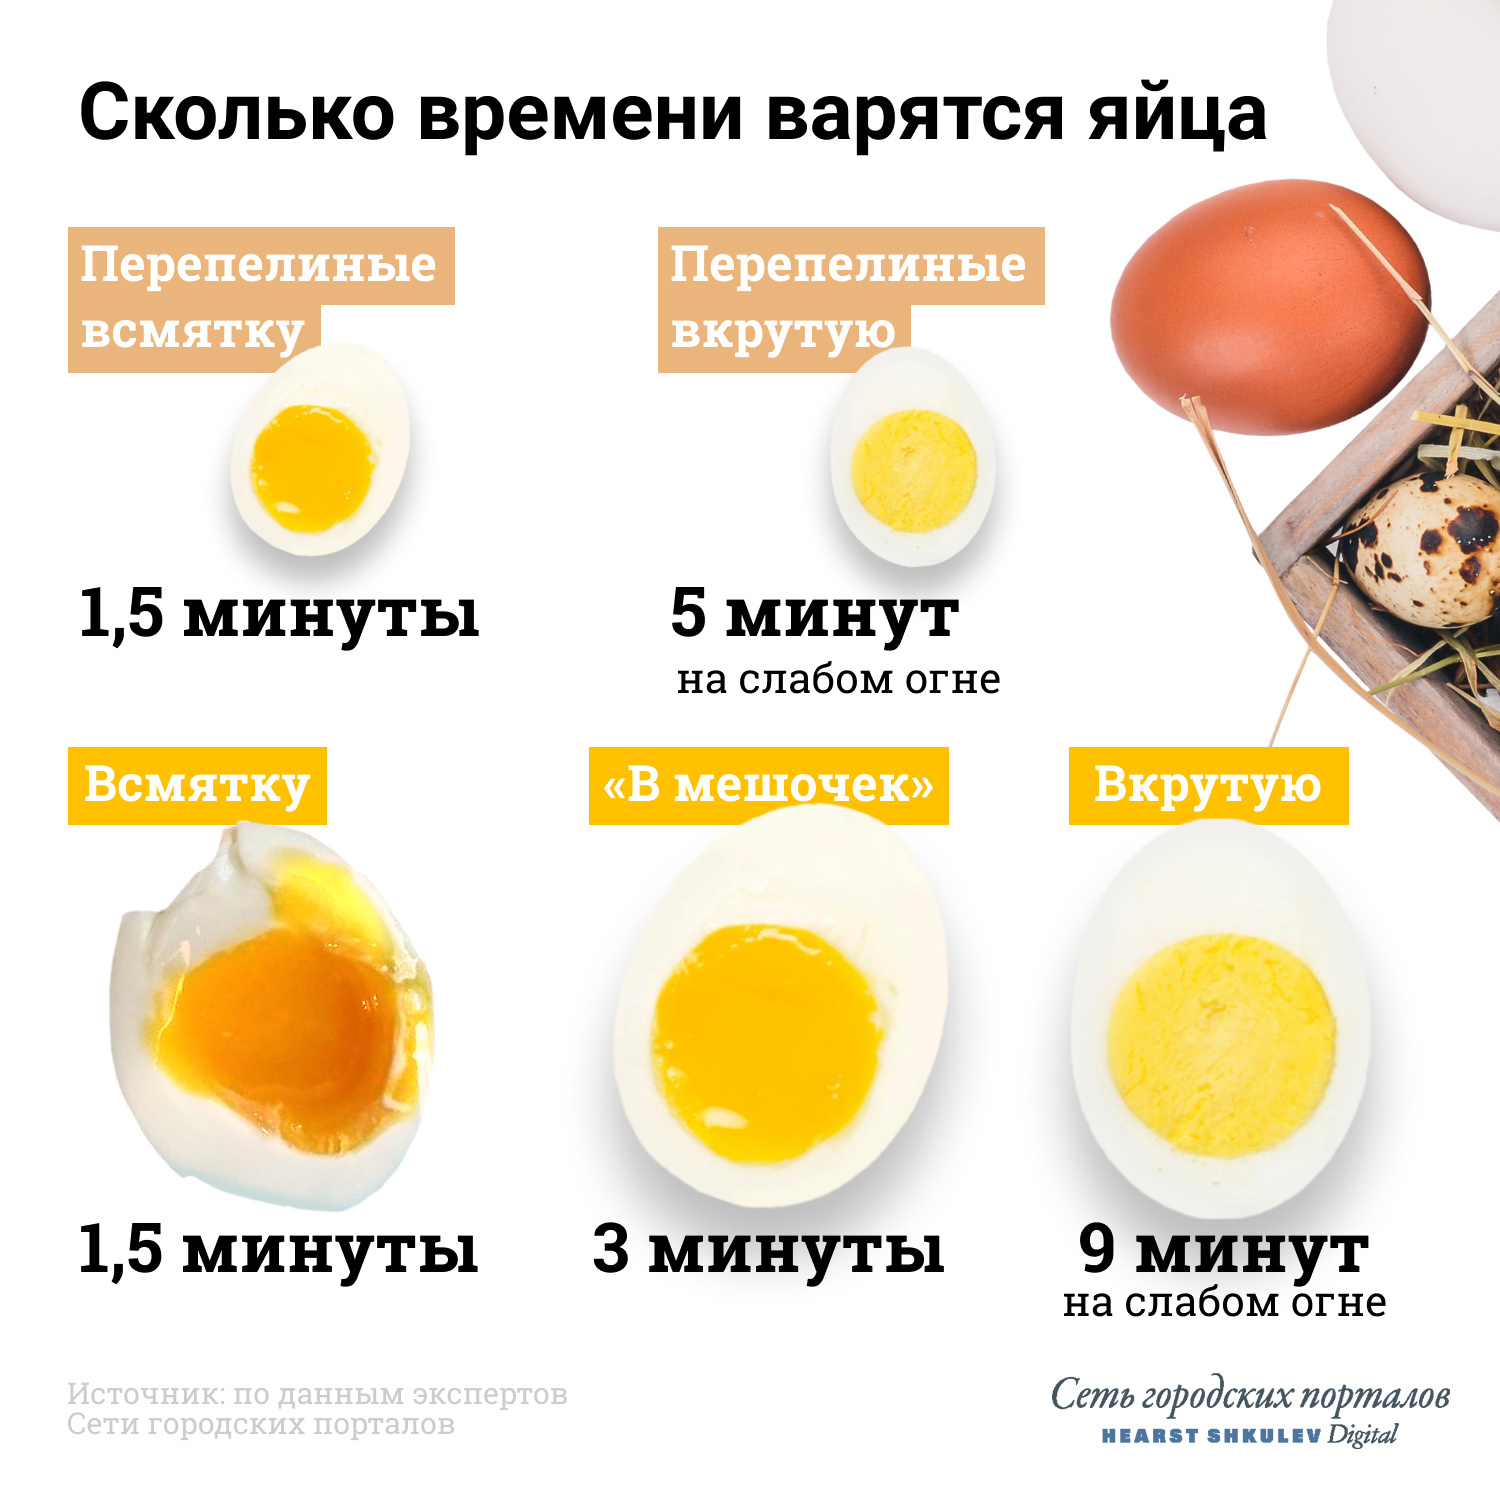 Яйца всмятку в кипящую. Яйцо всмятку яйца вкрутую. Яйца всмятку в мешочек и вкрутую. Сколько варить яйца. Сколько варить яйца всмятку.